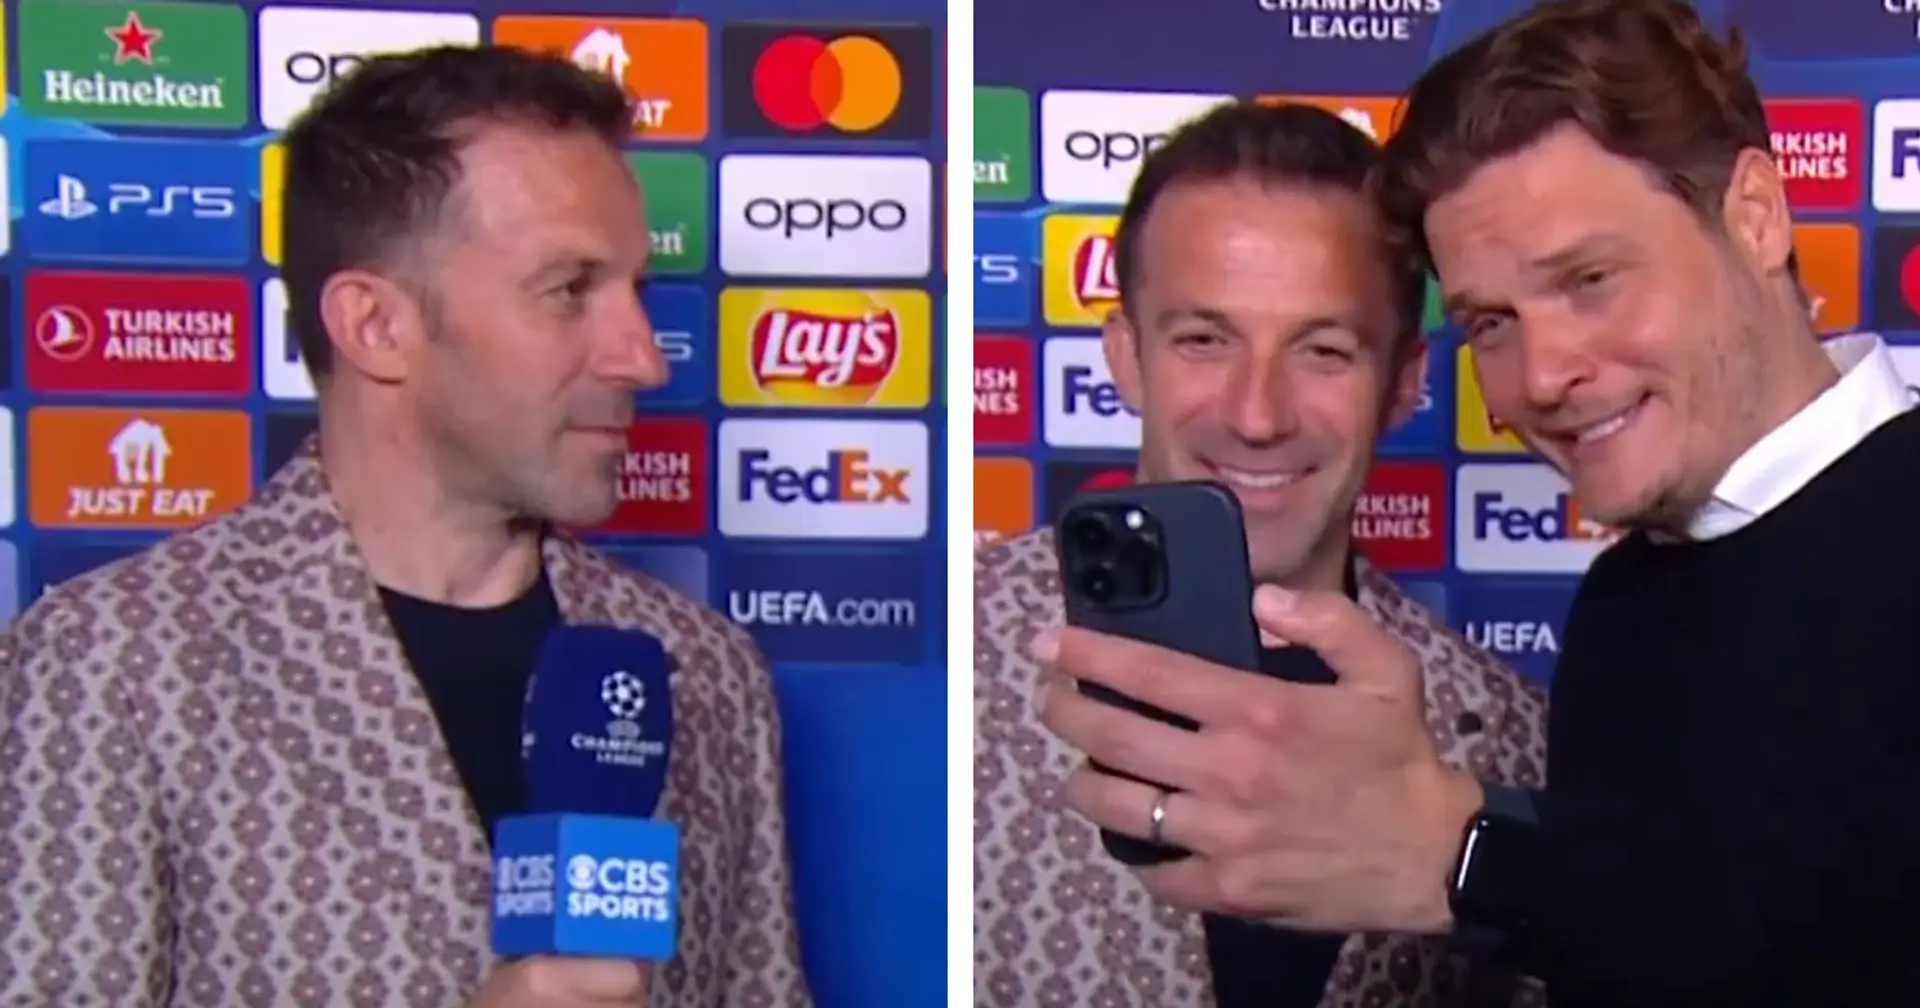 "Così leggenda che anche gli allenatori gli chiedono un selfie": il siparietto tra Del Piero e Terzic del BVB è virale